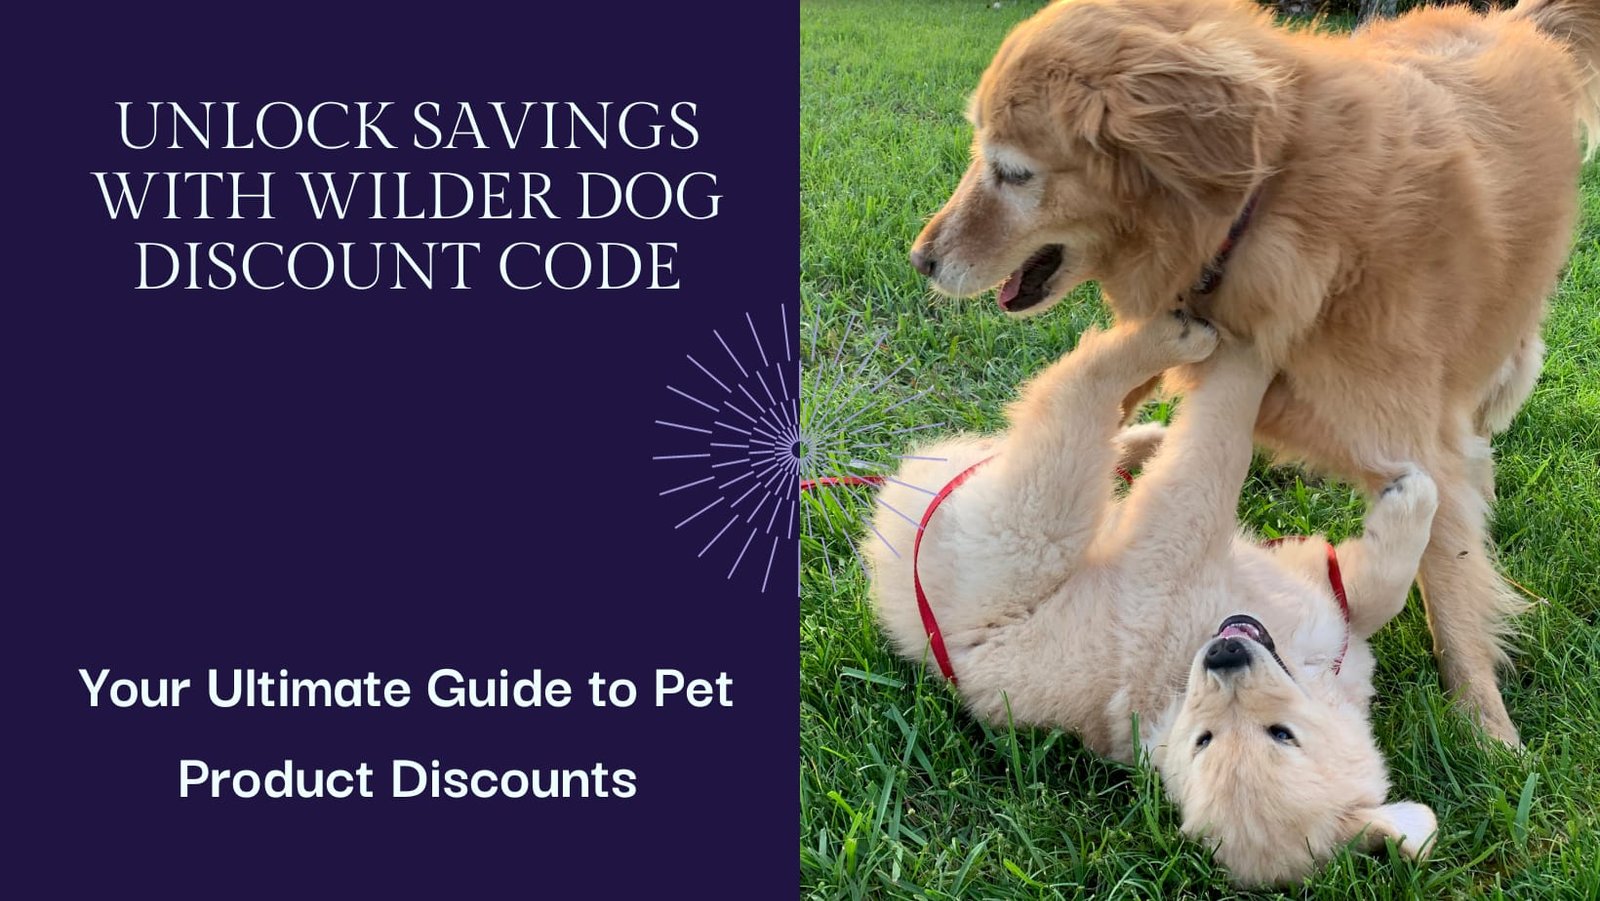 wilder dog discount code